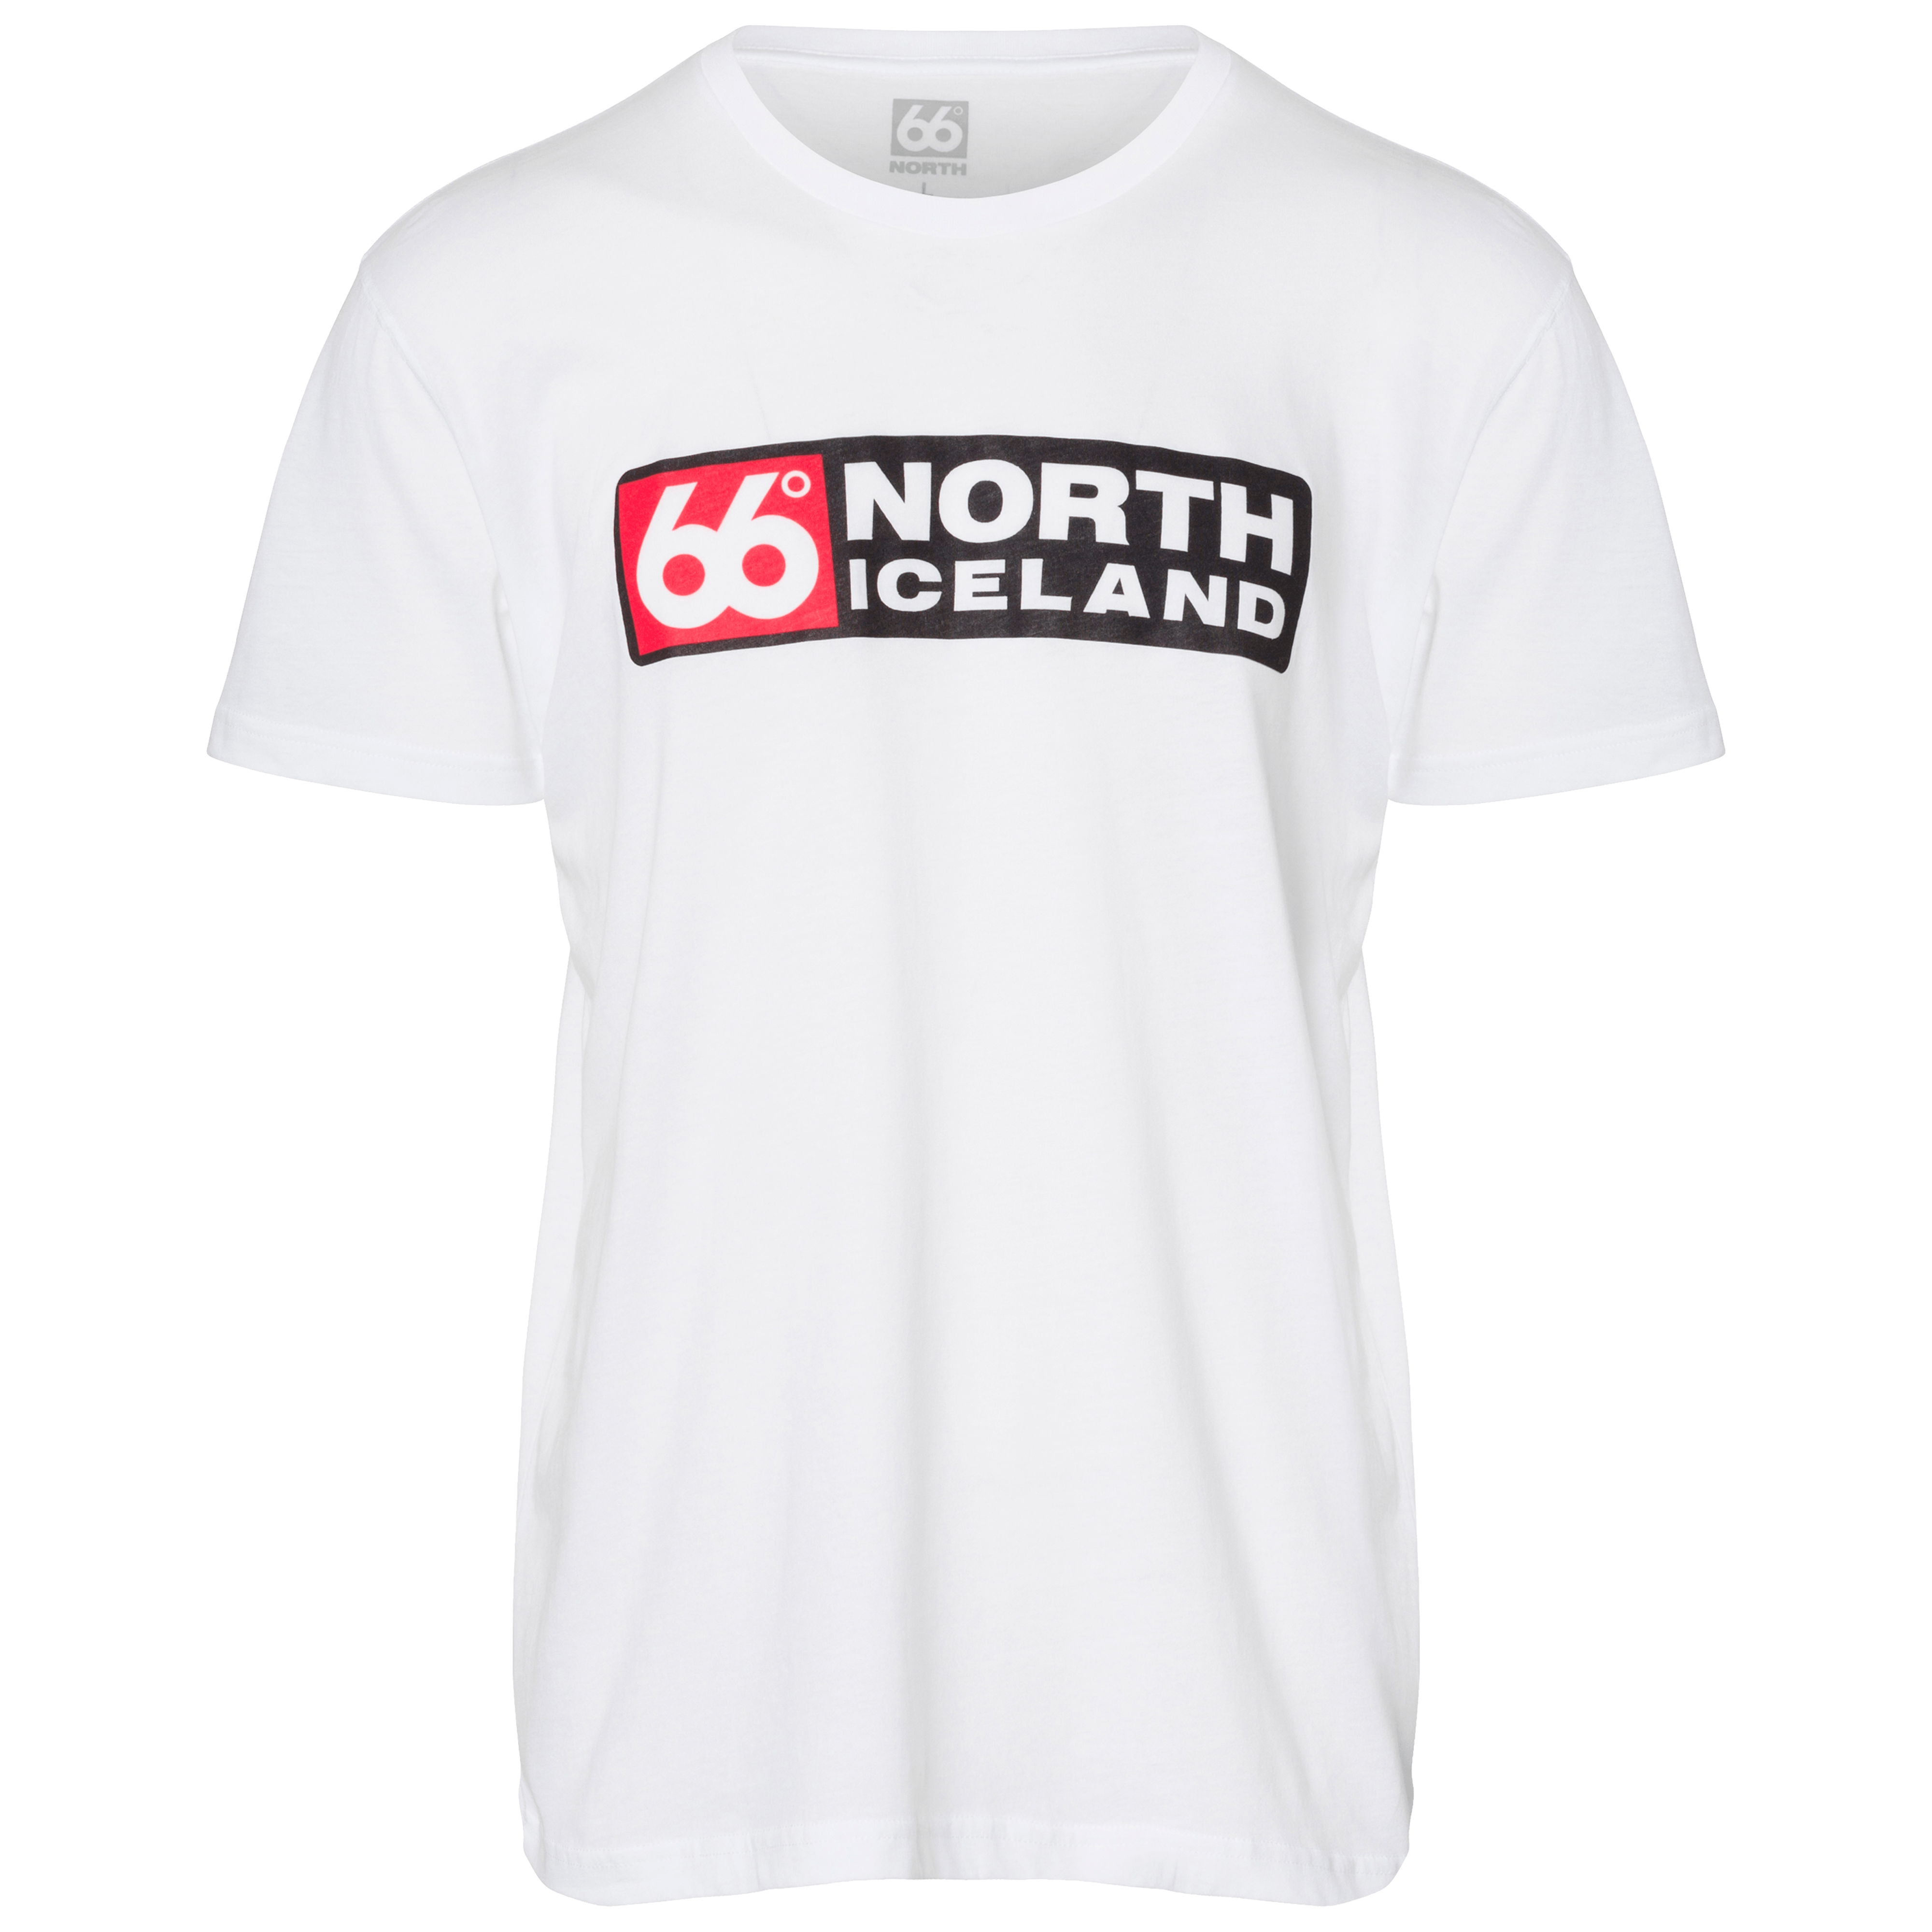 t shirt 66 north